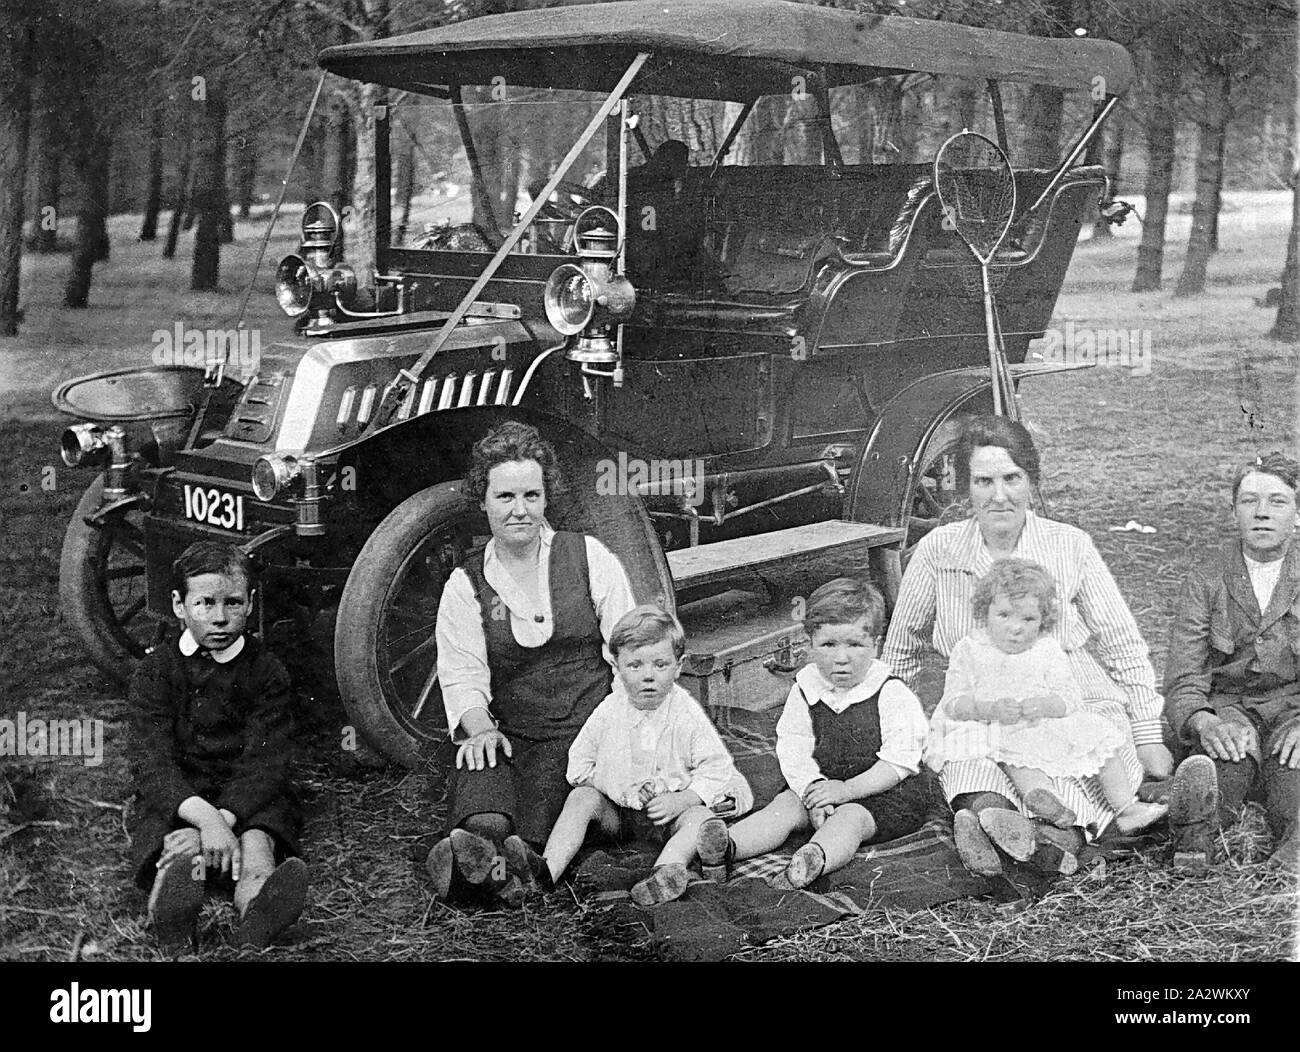 Negative - See Burrumbeet, Victoria, circa 1918, die lewin Familie auf einem Picknick. Sie sind neben ihrer De Dion Bouton Auto sitzt. Es ist ein Schmetterling Netz auf der Seite des Auto festgeschnallt Stockfoto